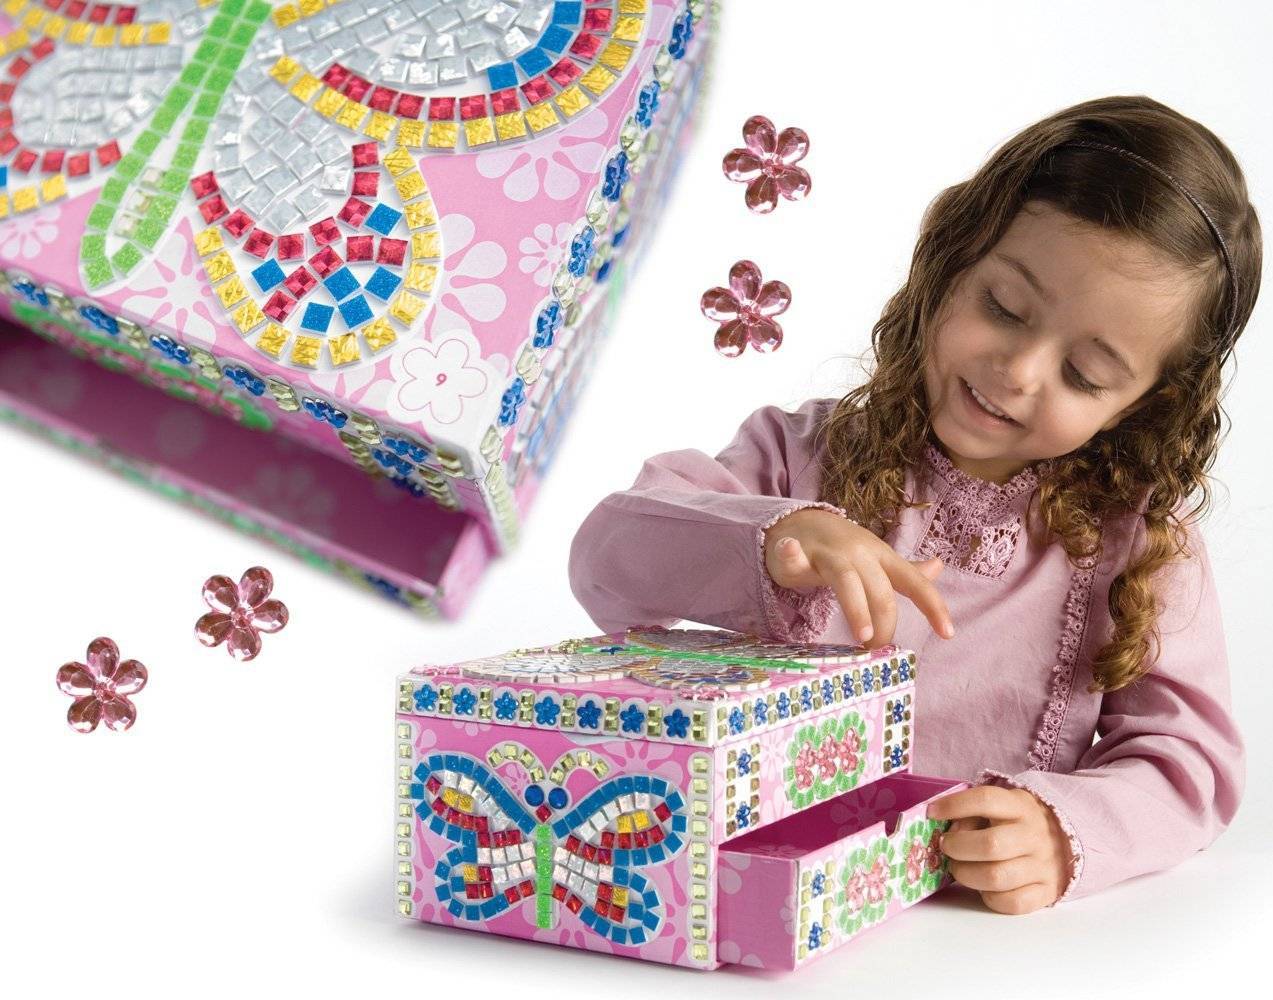 Что подарить девочке на 9 лет: идеи для маленьких разбойниц и принцесс